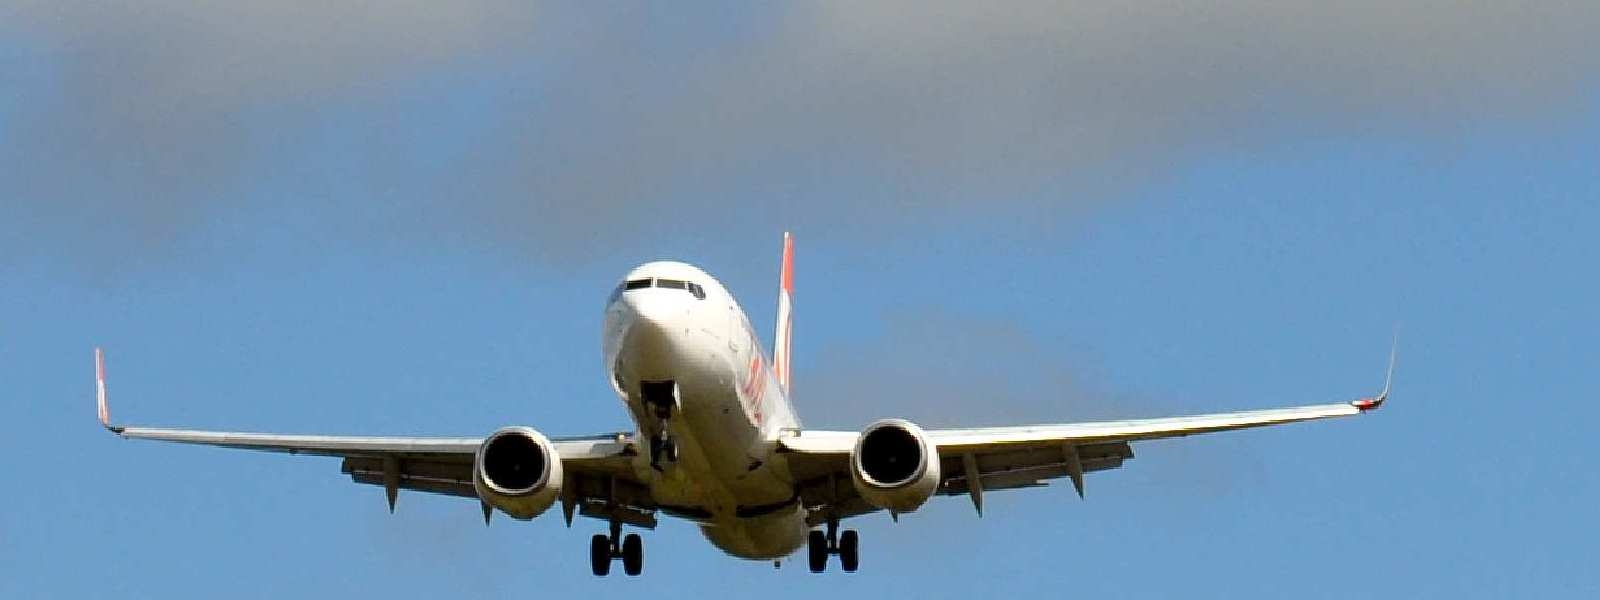 Trasporto Aereo: Sindacati, bene rinnovo sezione aeroporti del contratto settore